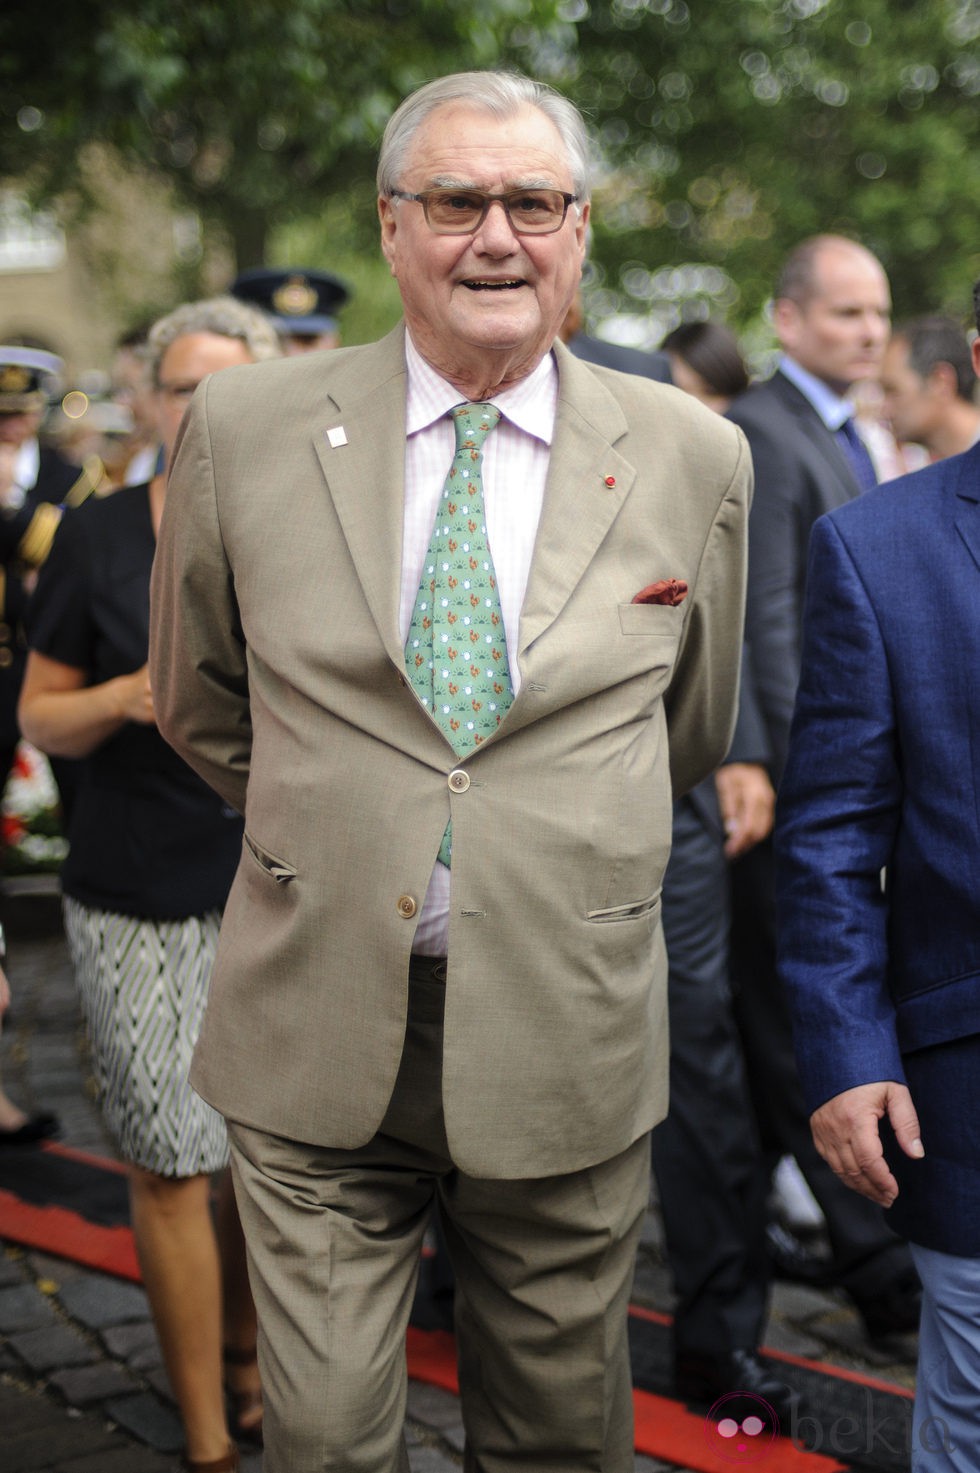 El Príncipe Enrique de Dinamarca en Londres 2012